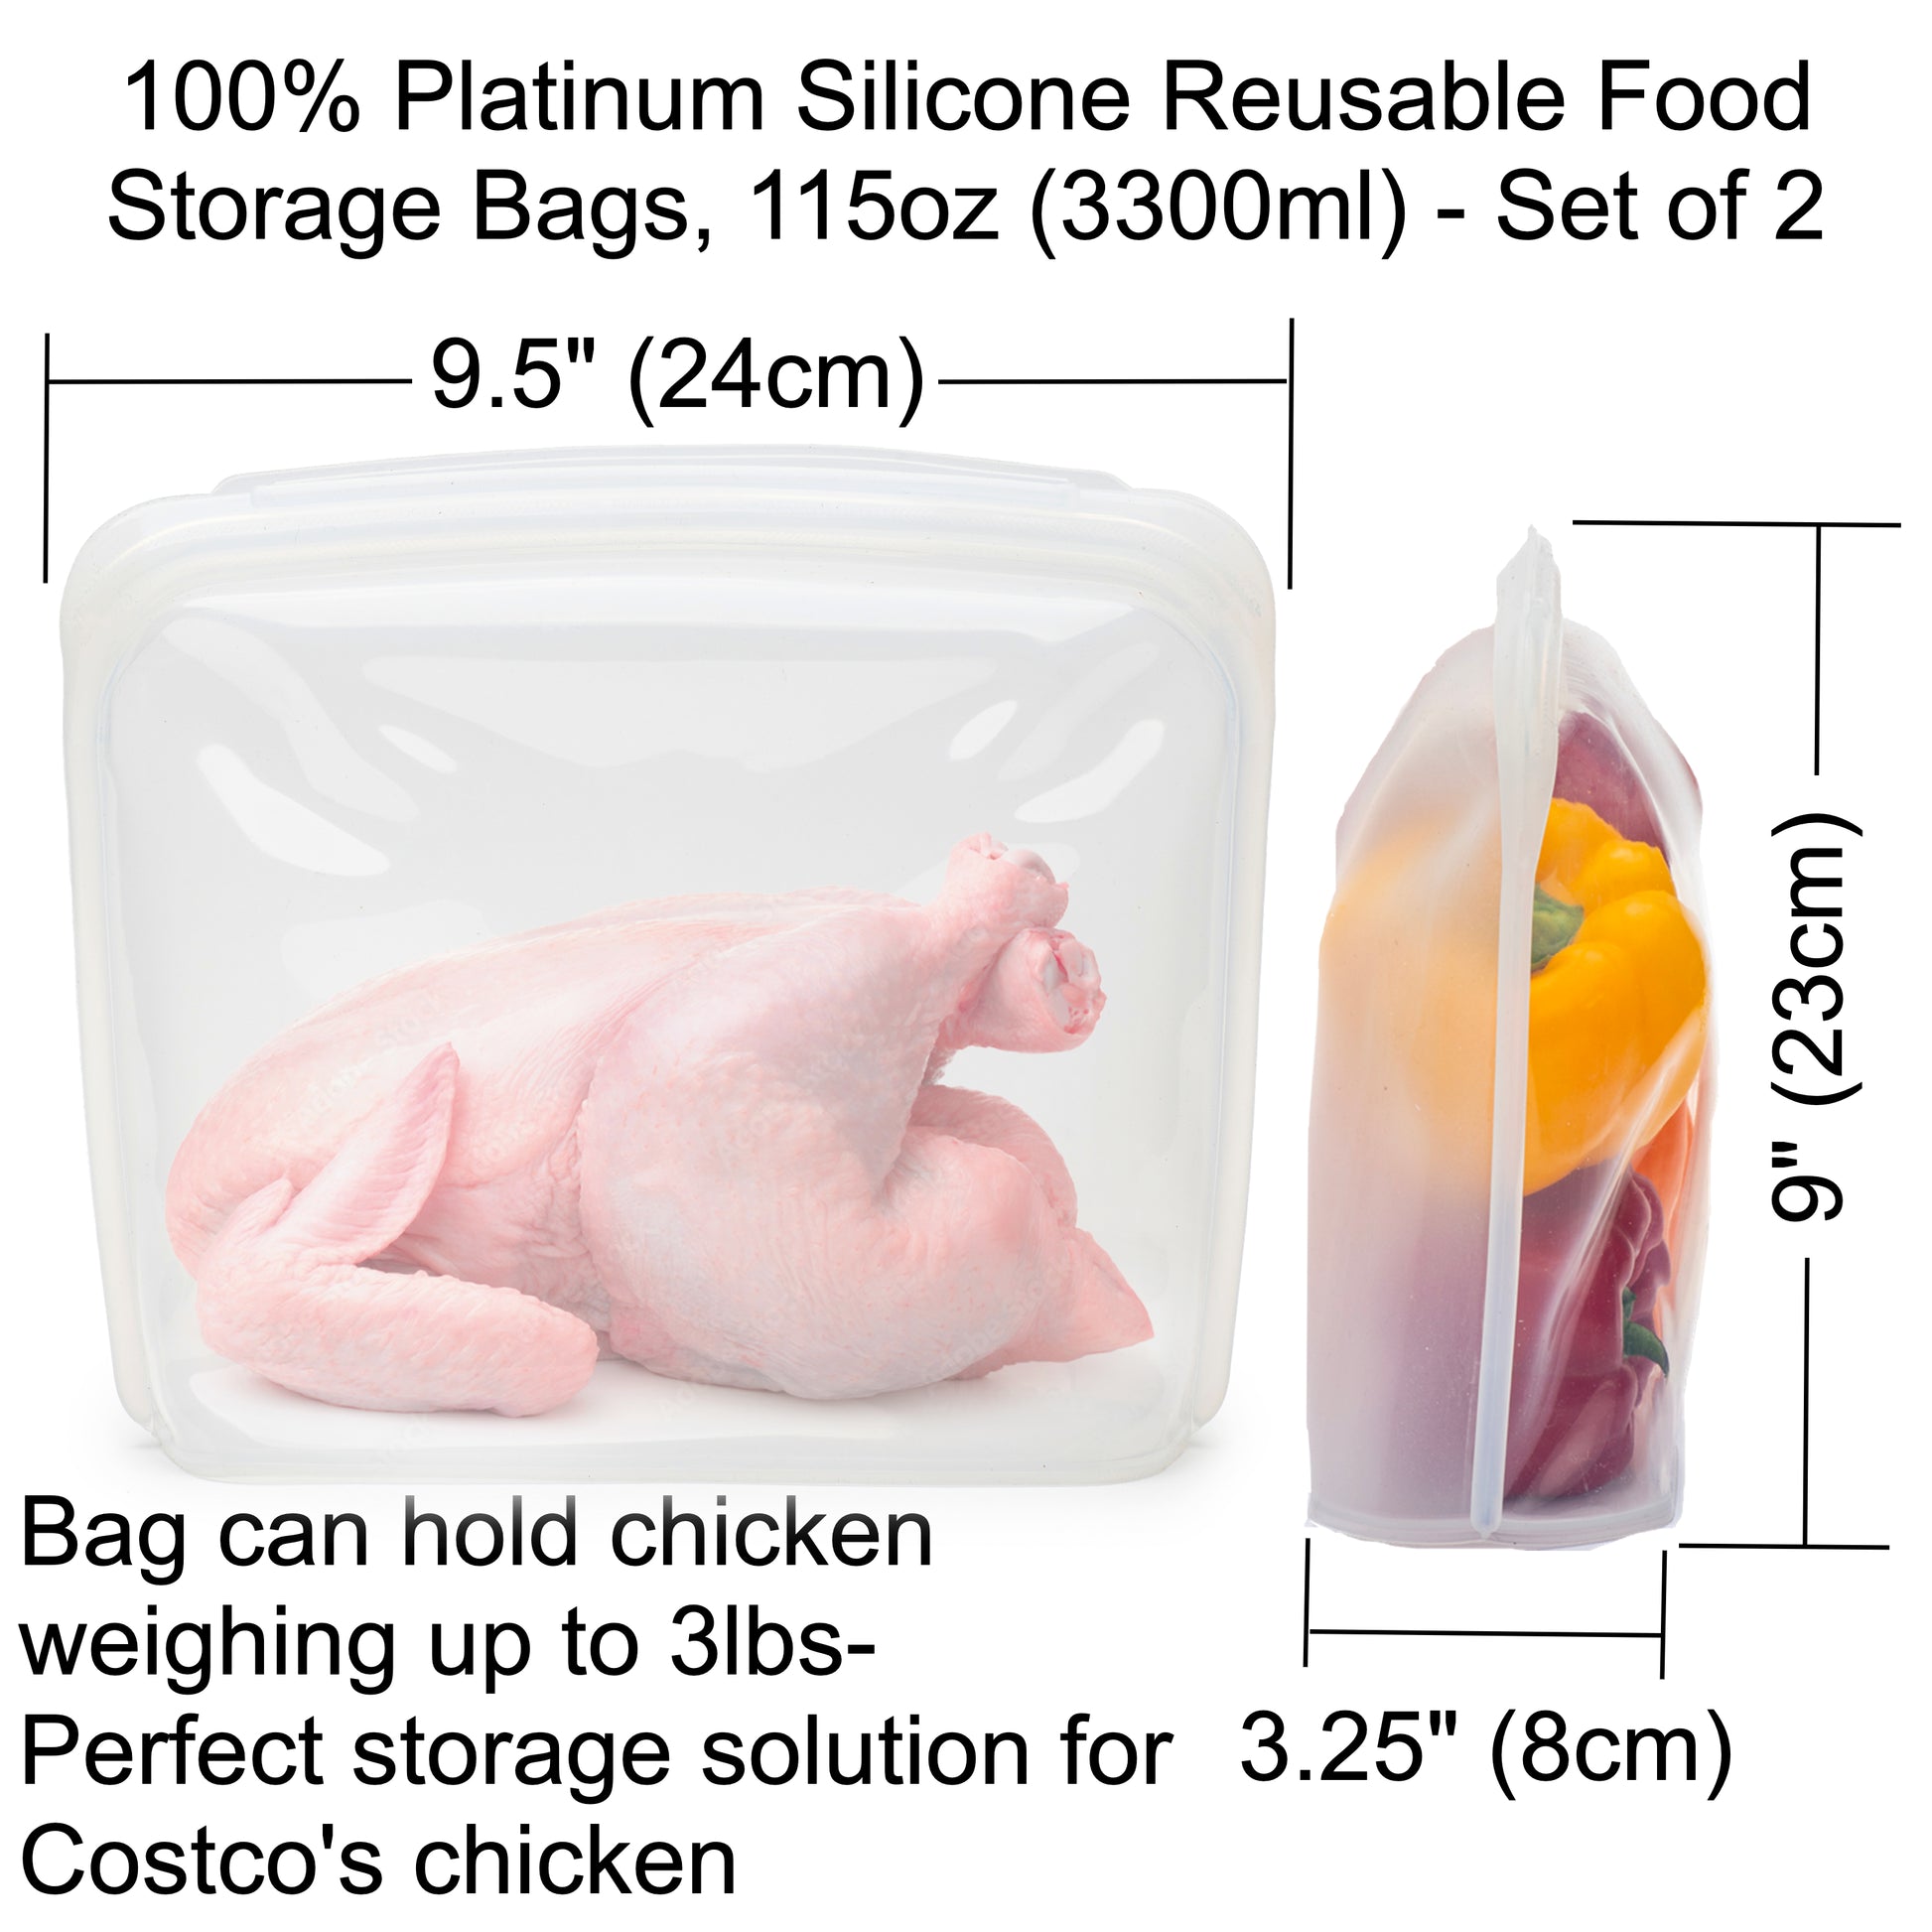 Elkanah 100% Premium Platinum Silicone Reusable Food Storage Bags elkanah.store